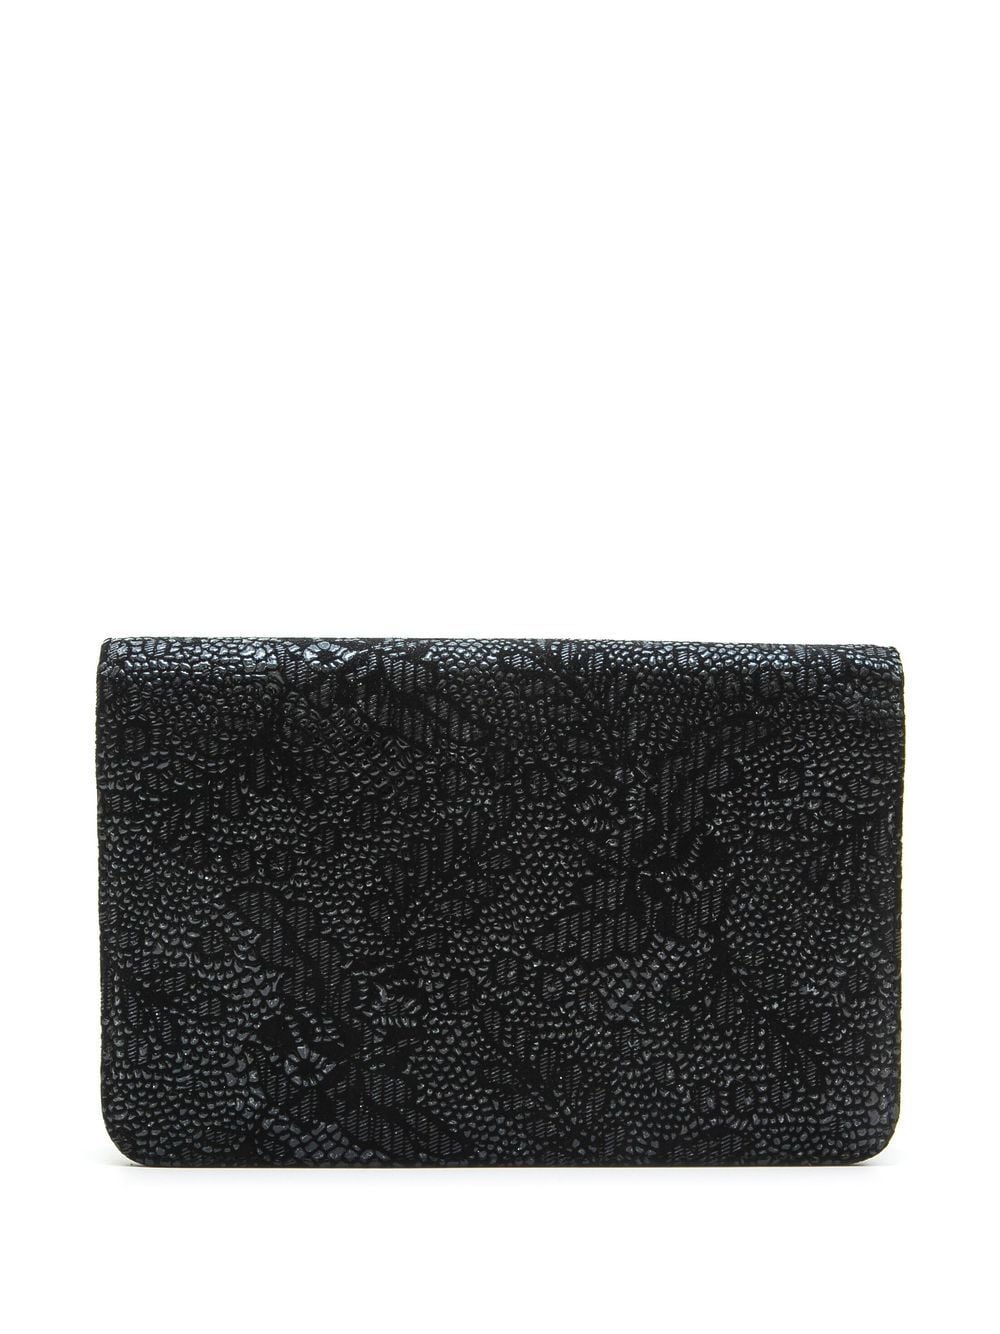 CHANEL Pre-Owned 2013-2014 portemonnee met bloemenprint - Zwart